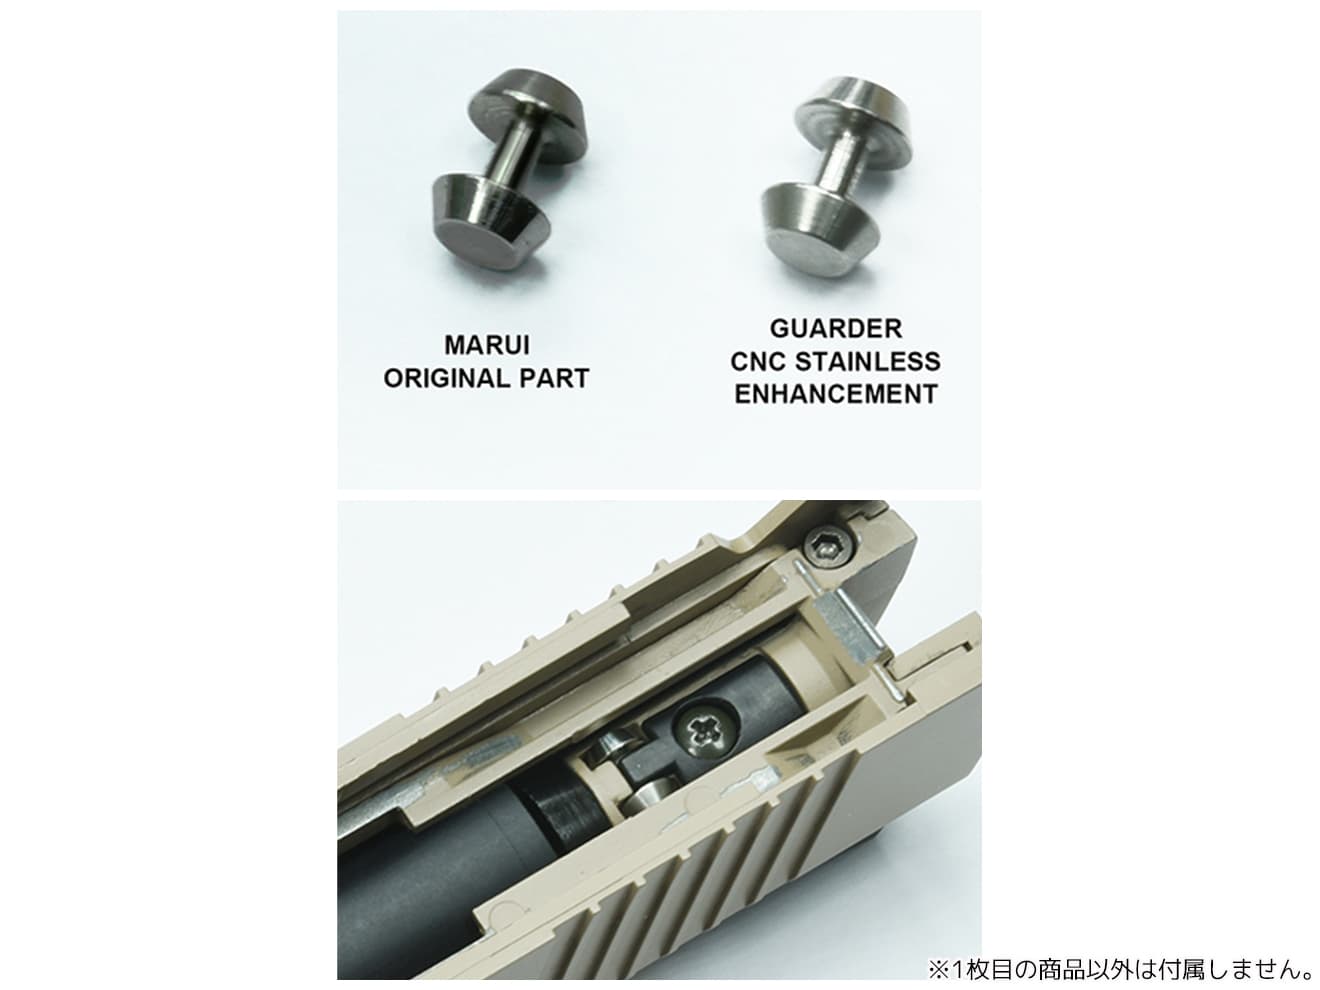 GUARDER ステンレスCNC 強化ピストンローラー for マルイ M45A1